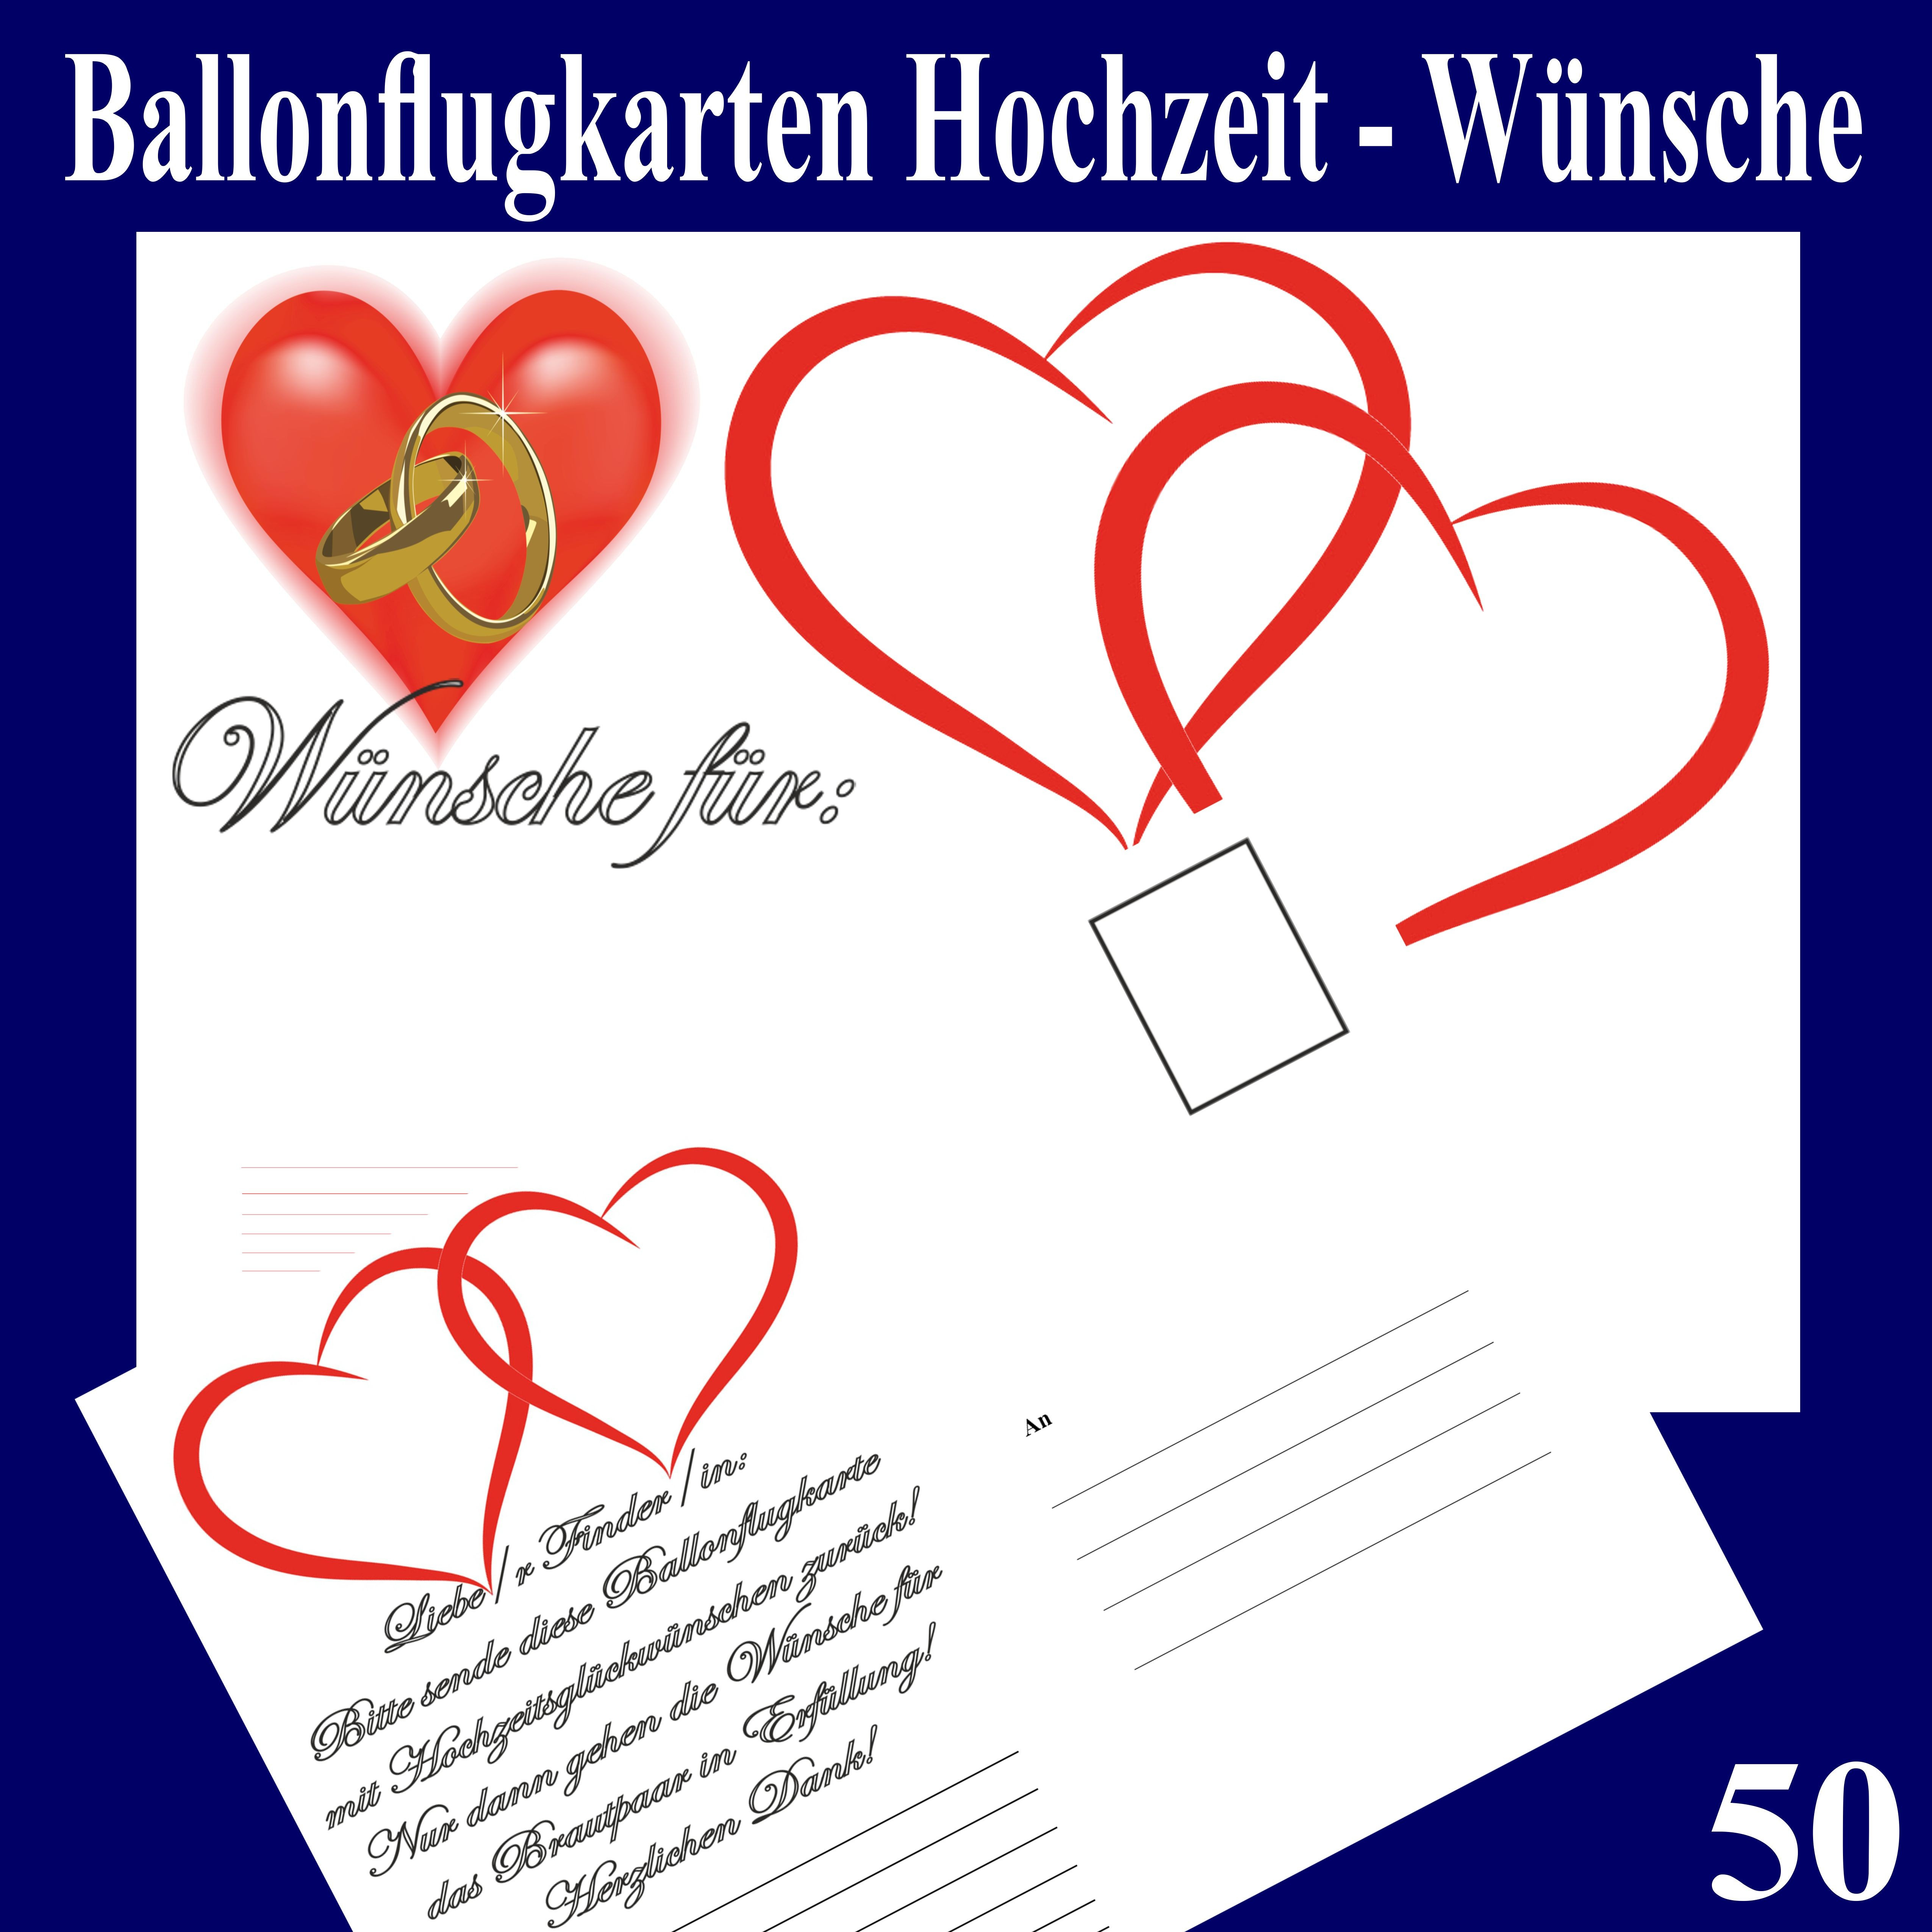 Hochzeit Überraschung Für Brautpaar
 Ballonflugkarten Hochzeit Wünsche für das Brautpaar 50